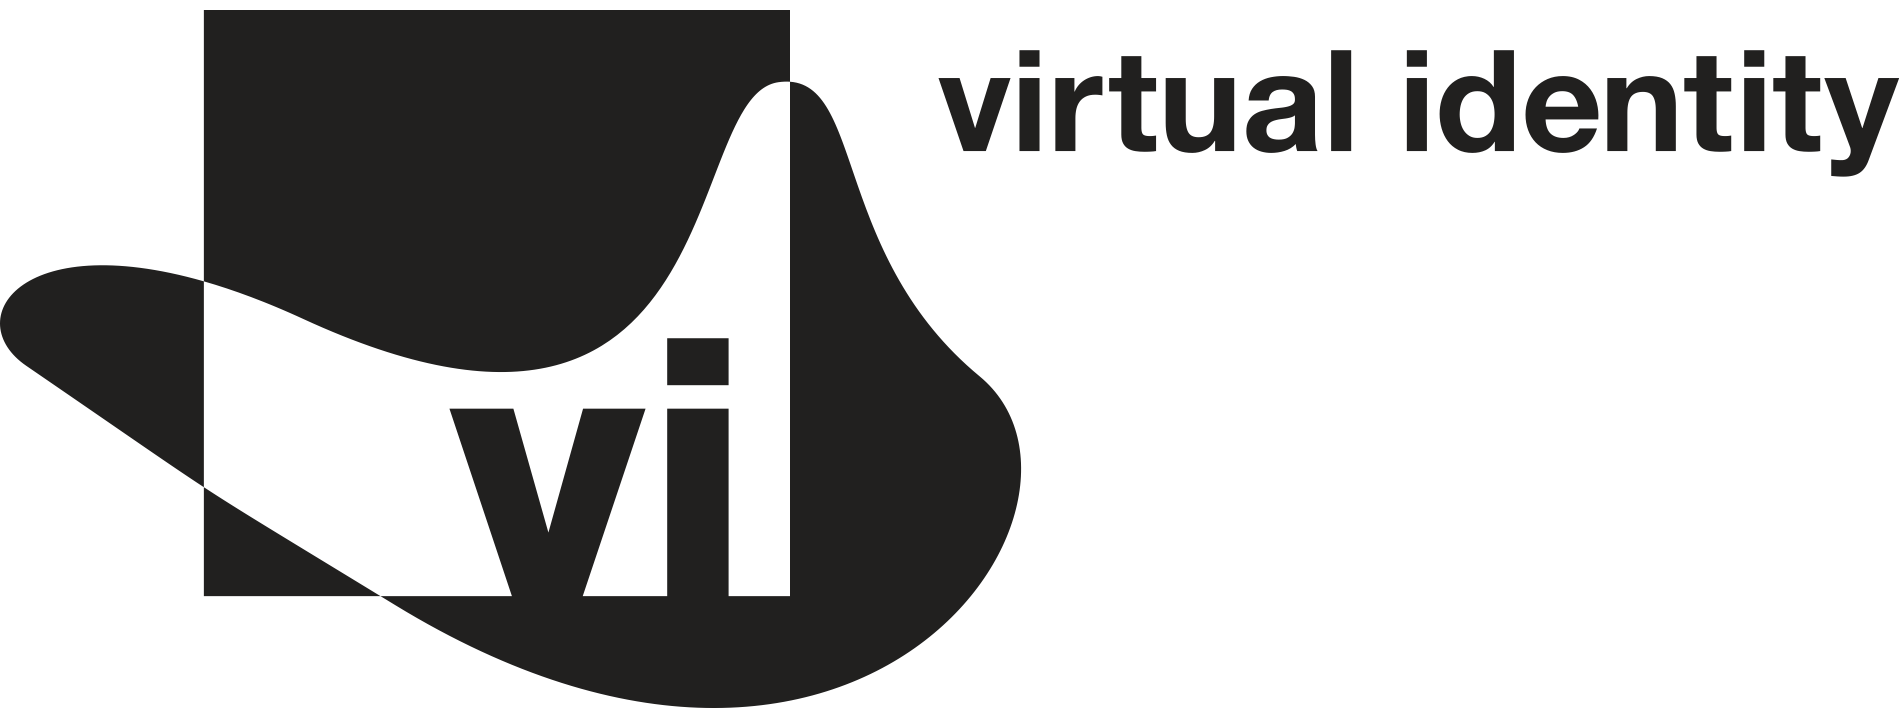 vi_sw_logo